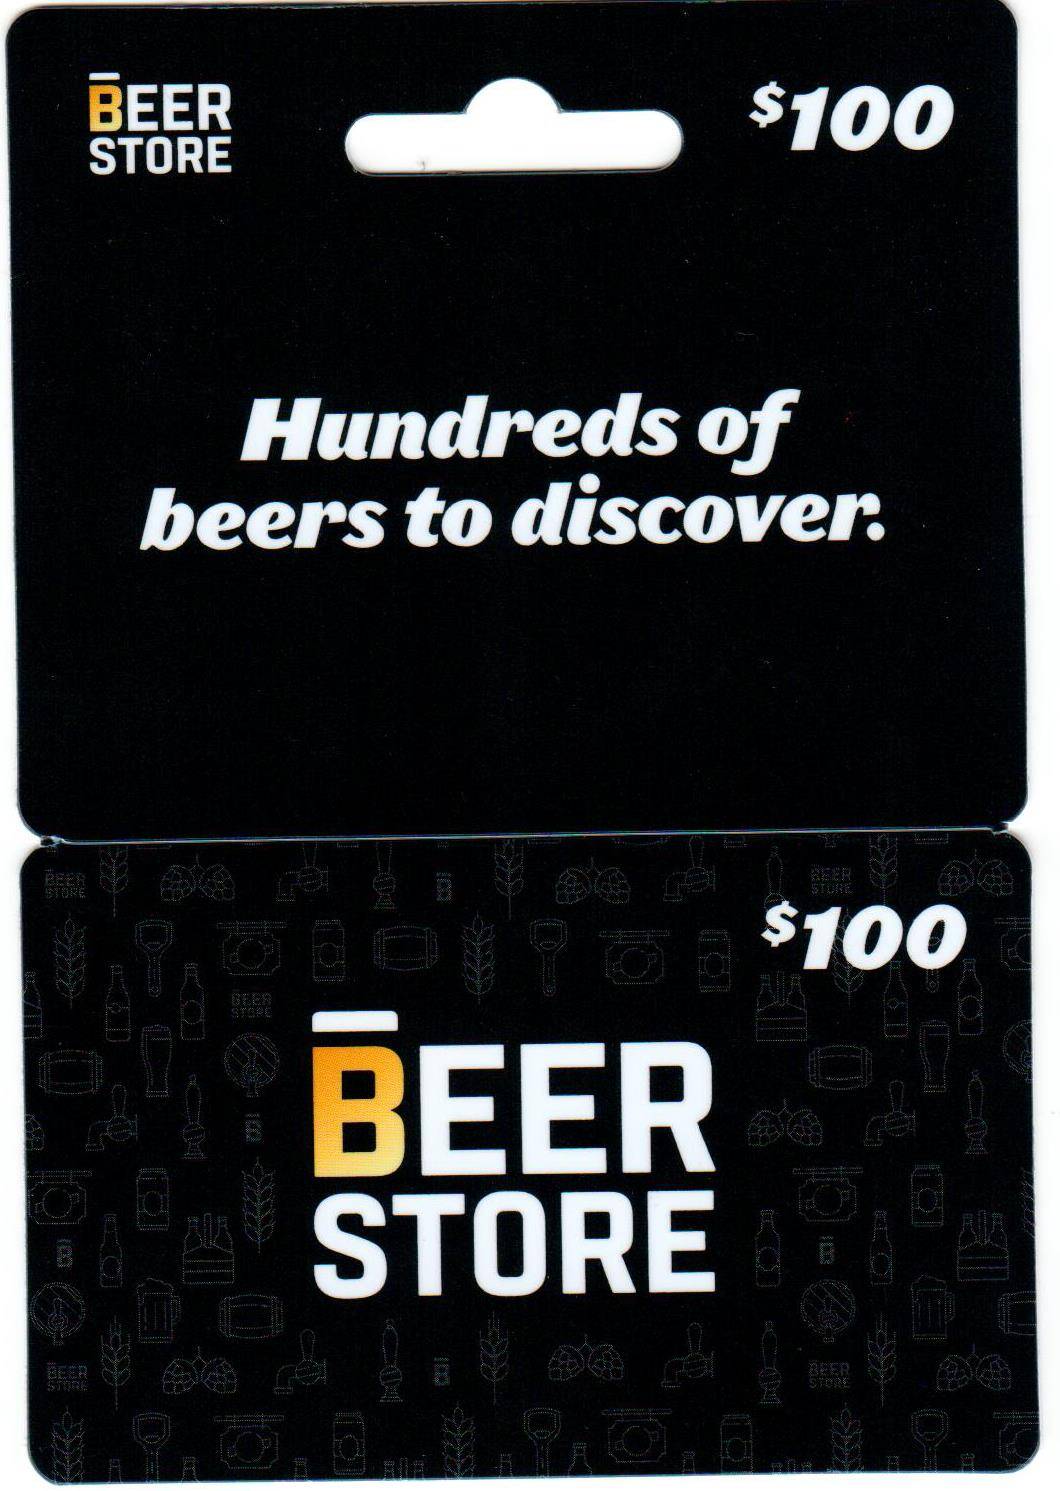 $100 Beer Store Gift Certificate